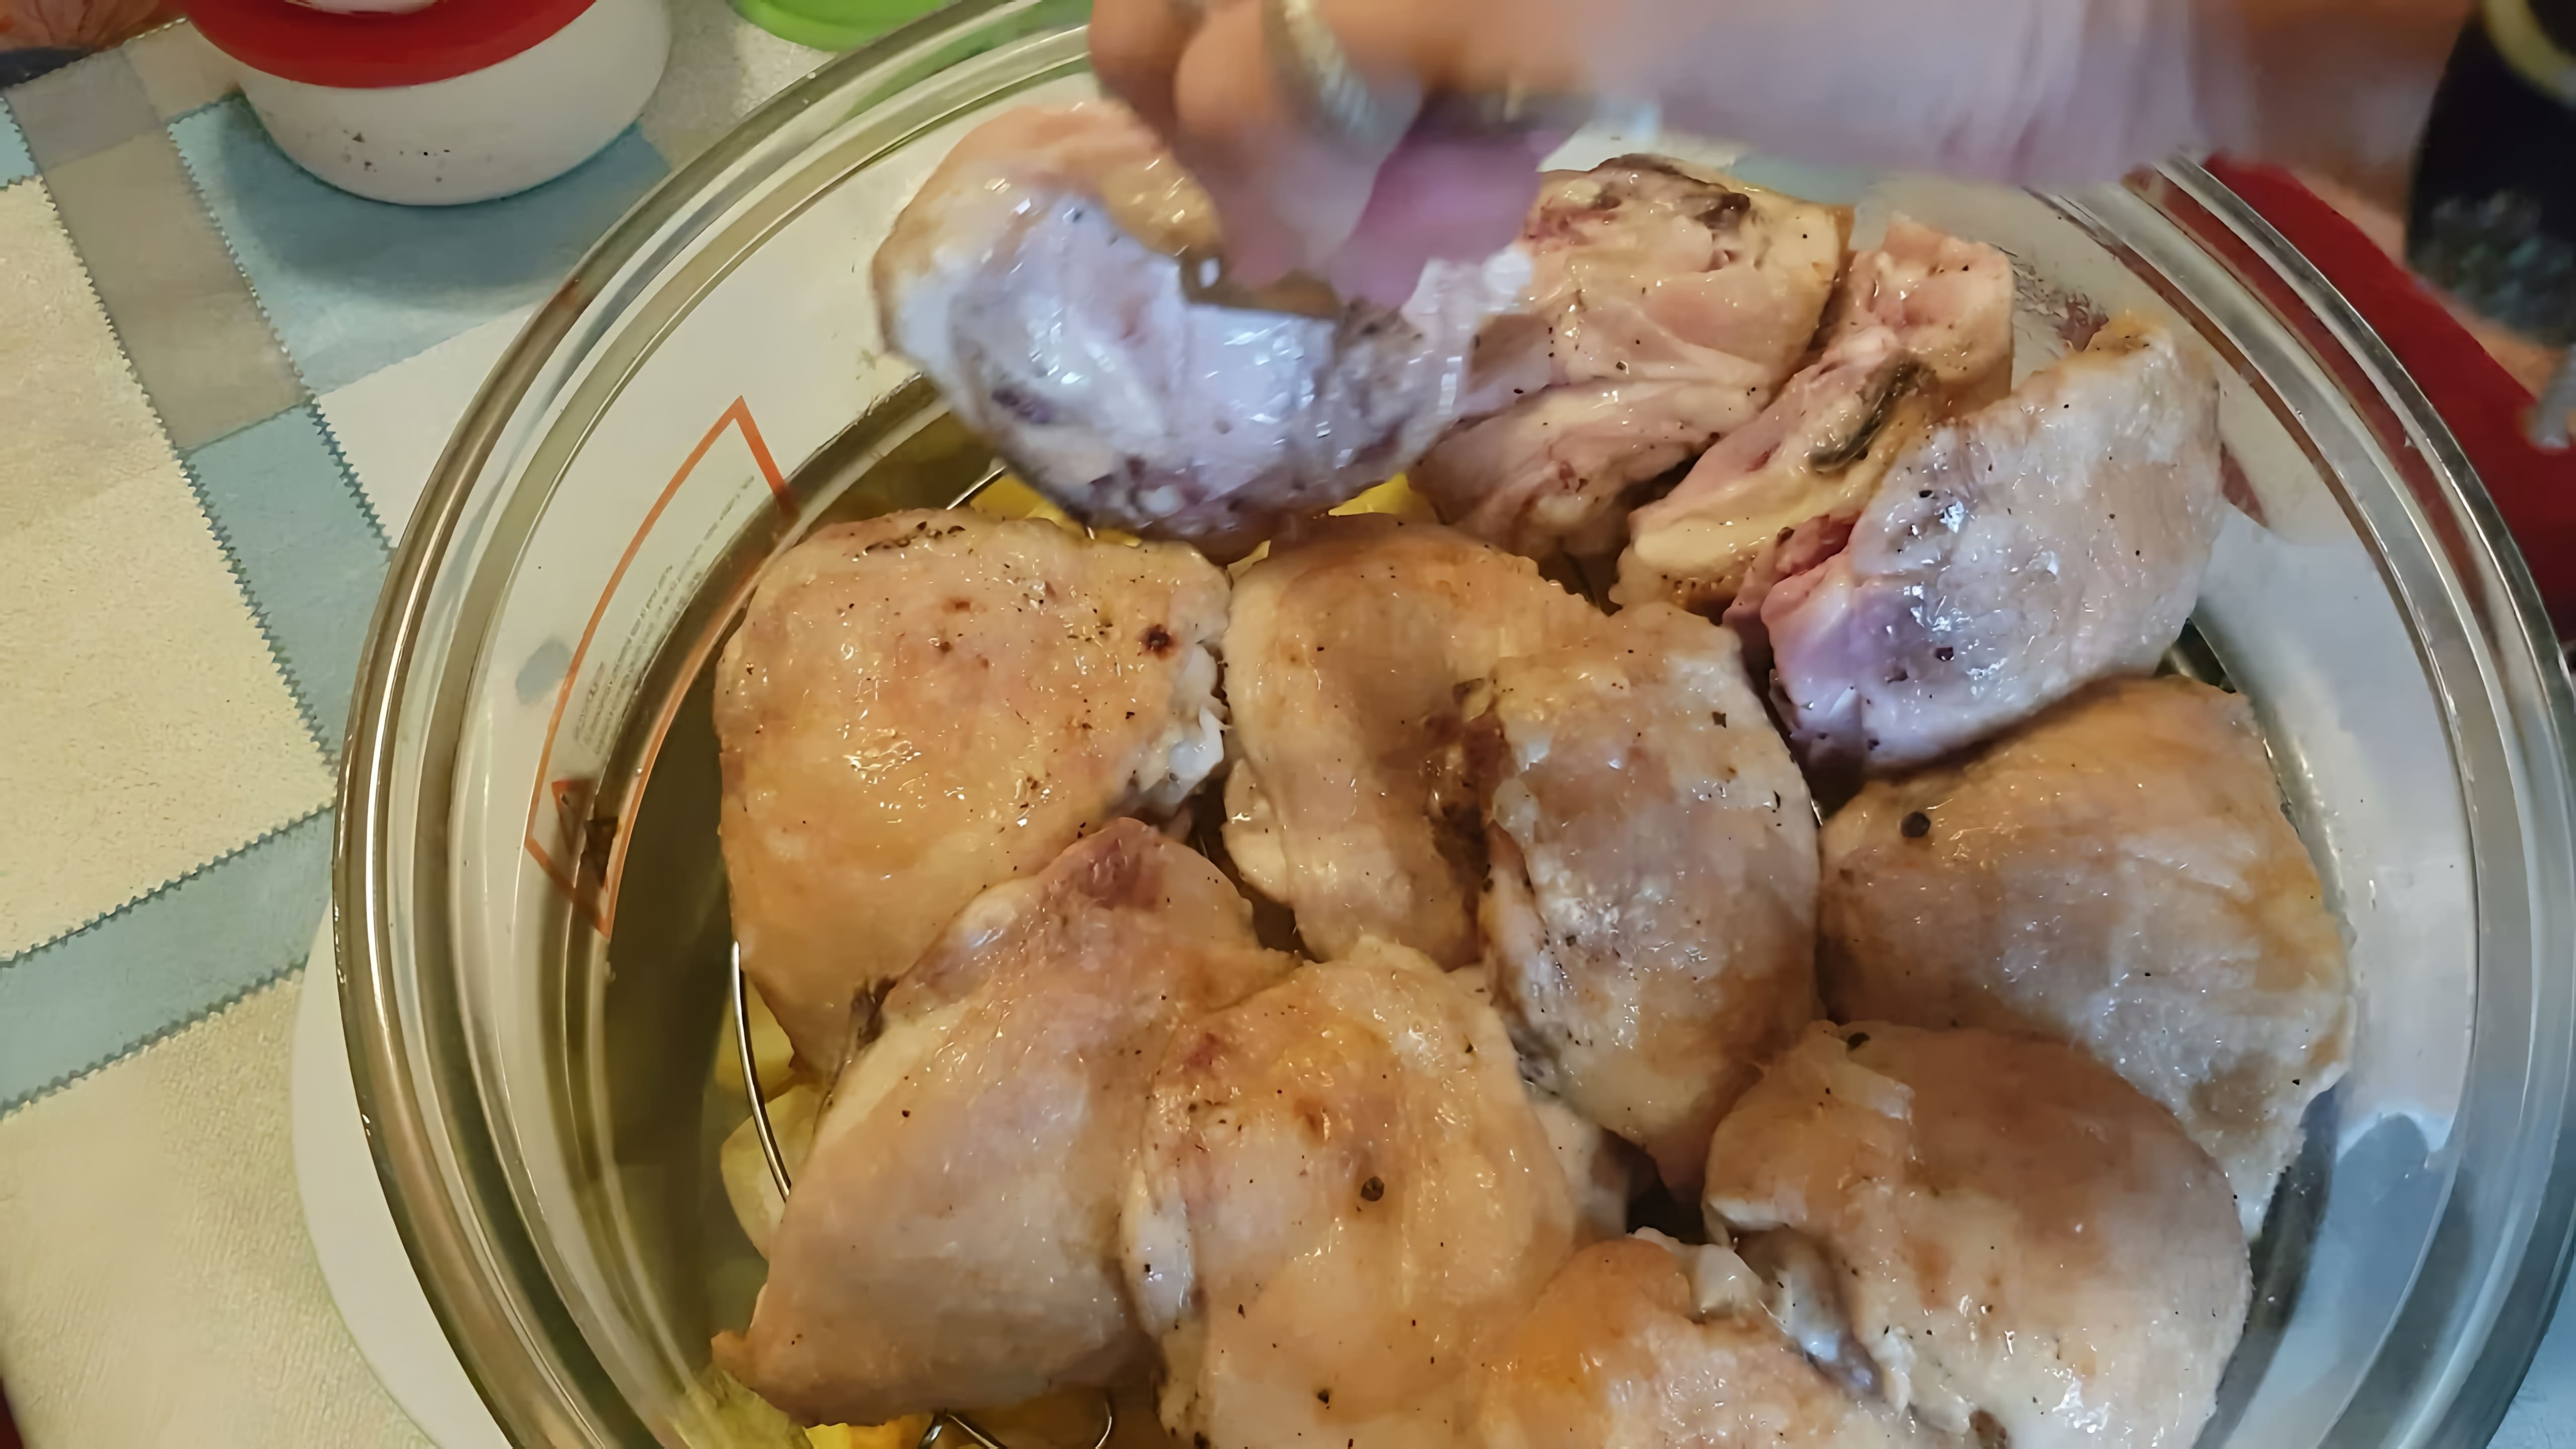 В этом видео демонстрируется процесс приготовления куриных бедер и картофеля в аэрогриле